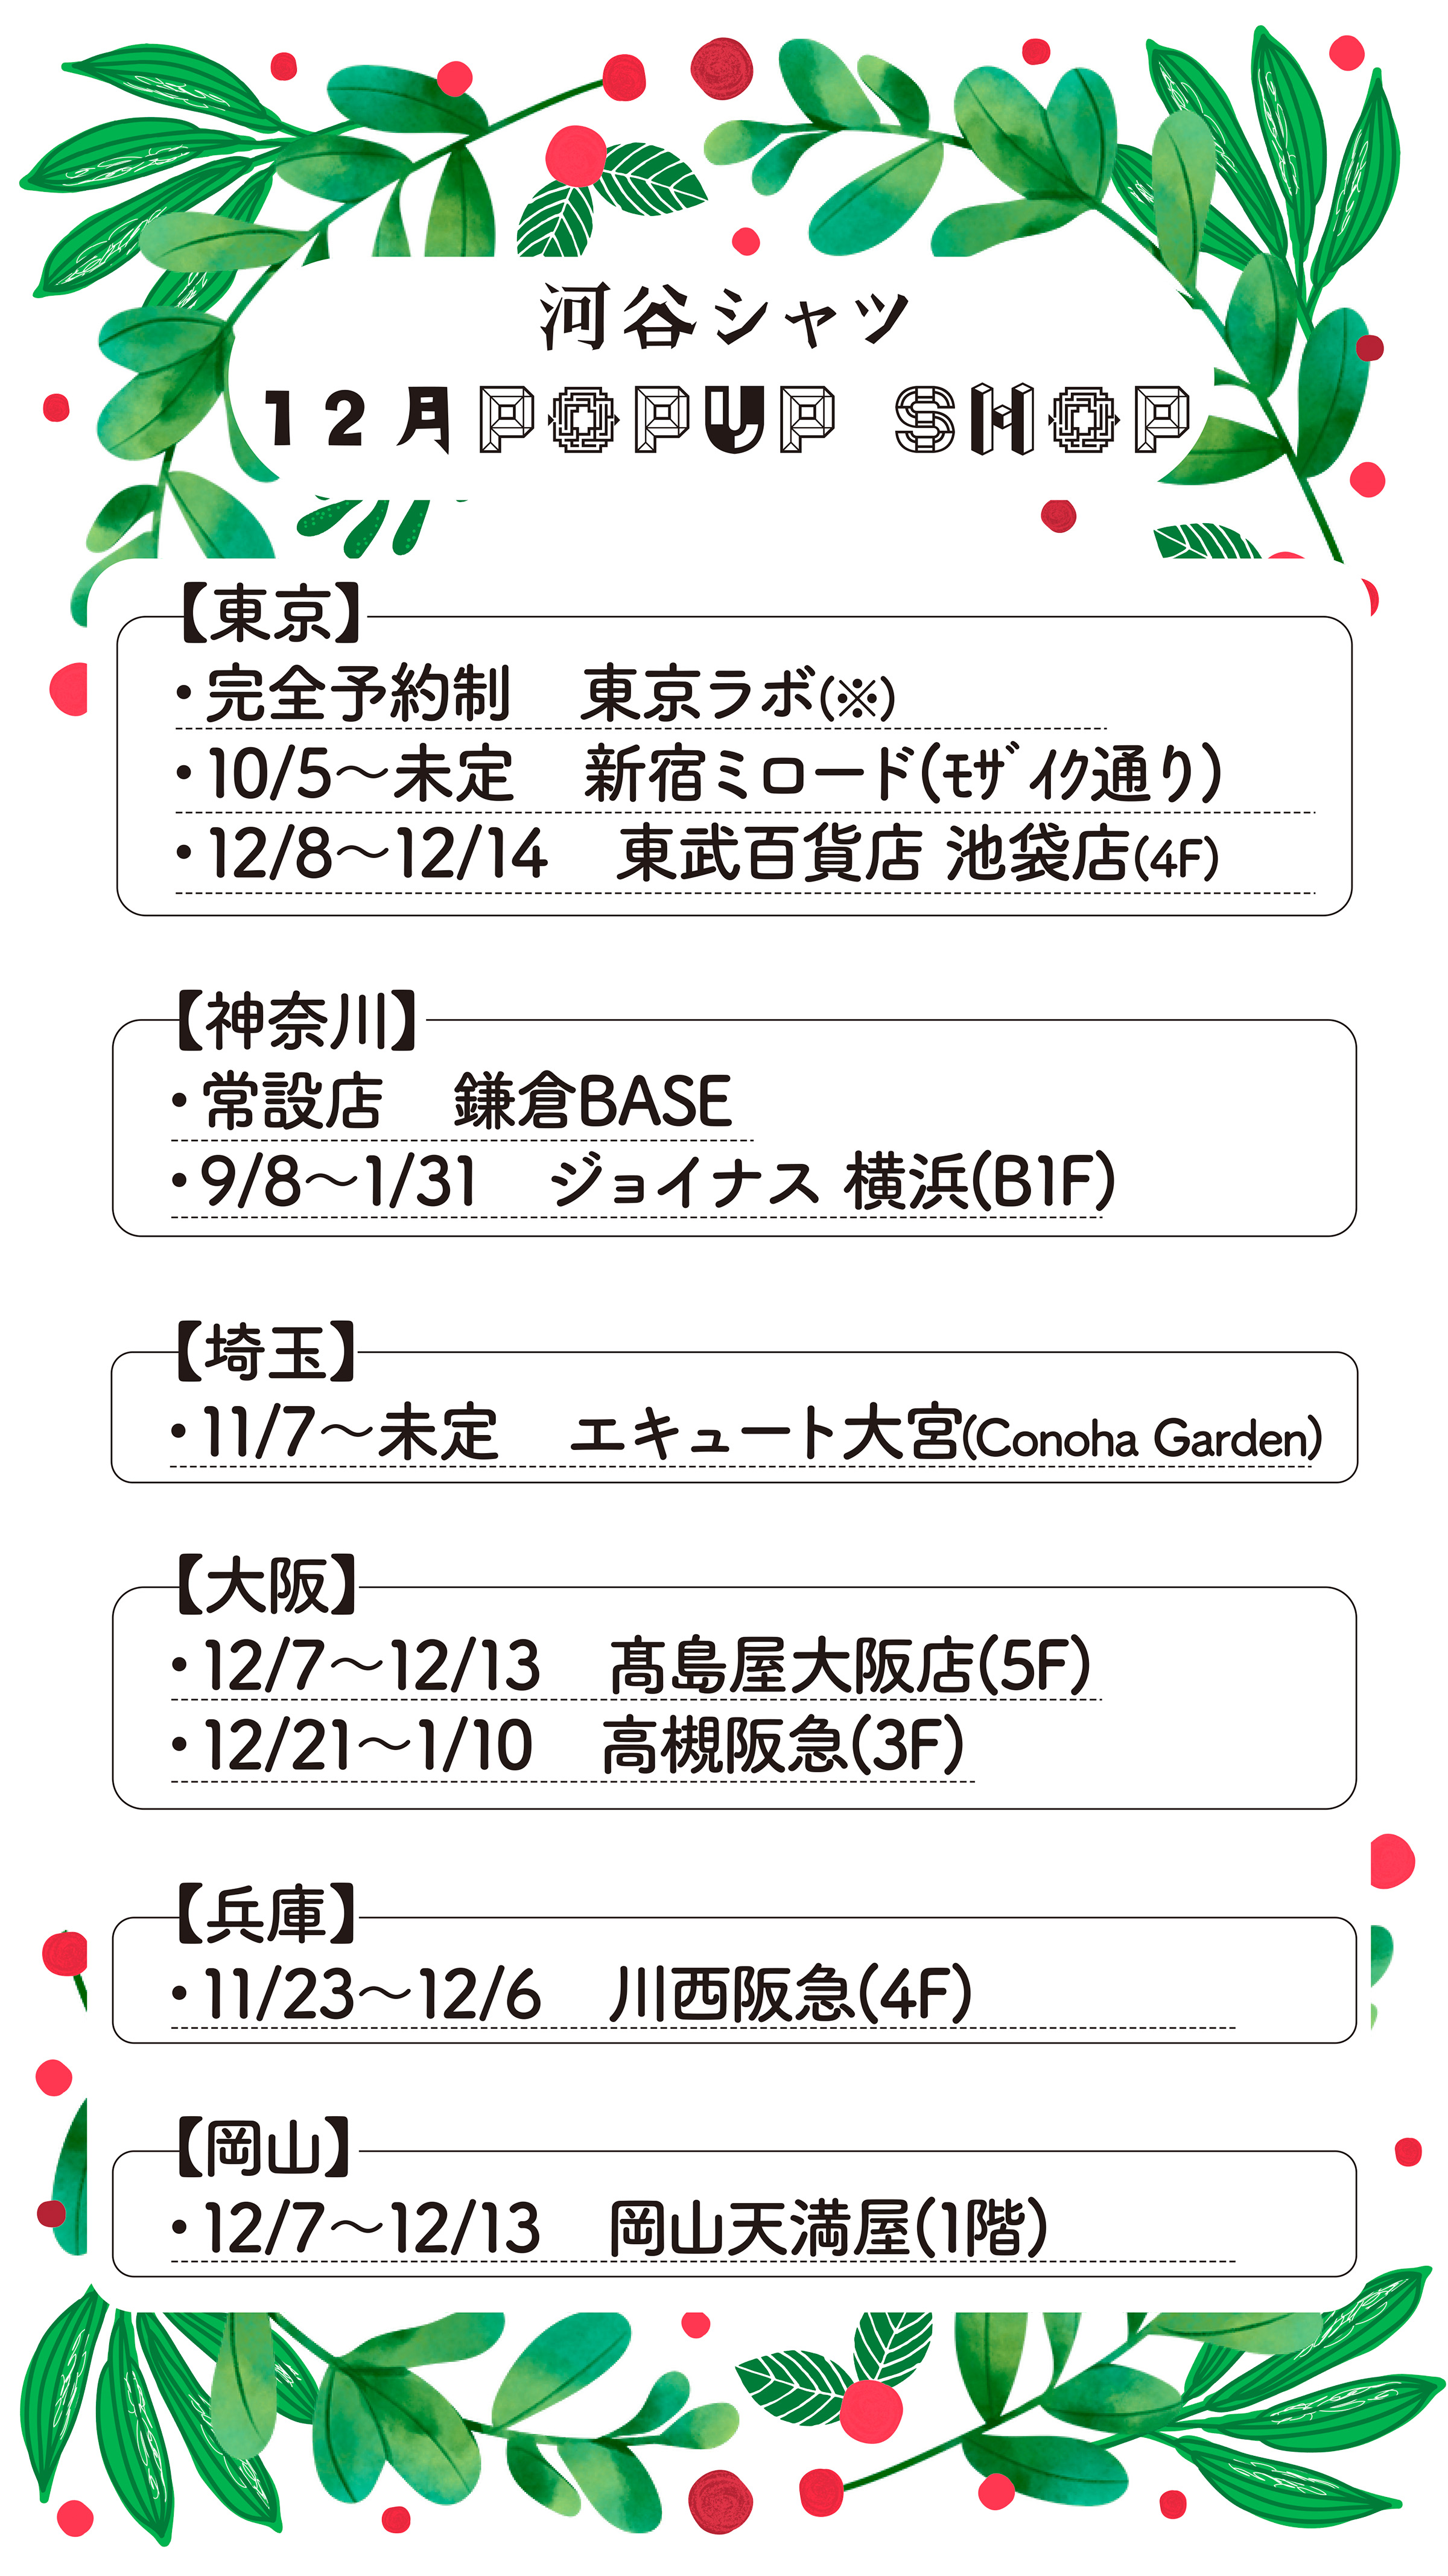 【Mag】12月POPUP SHOP情報